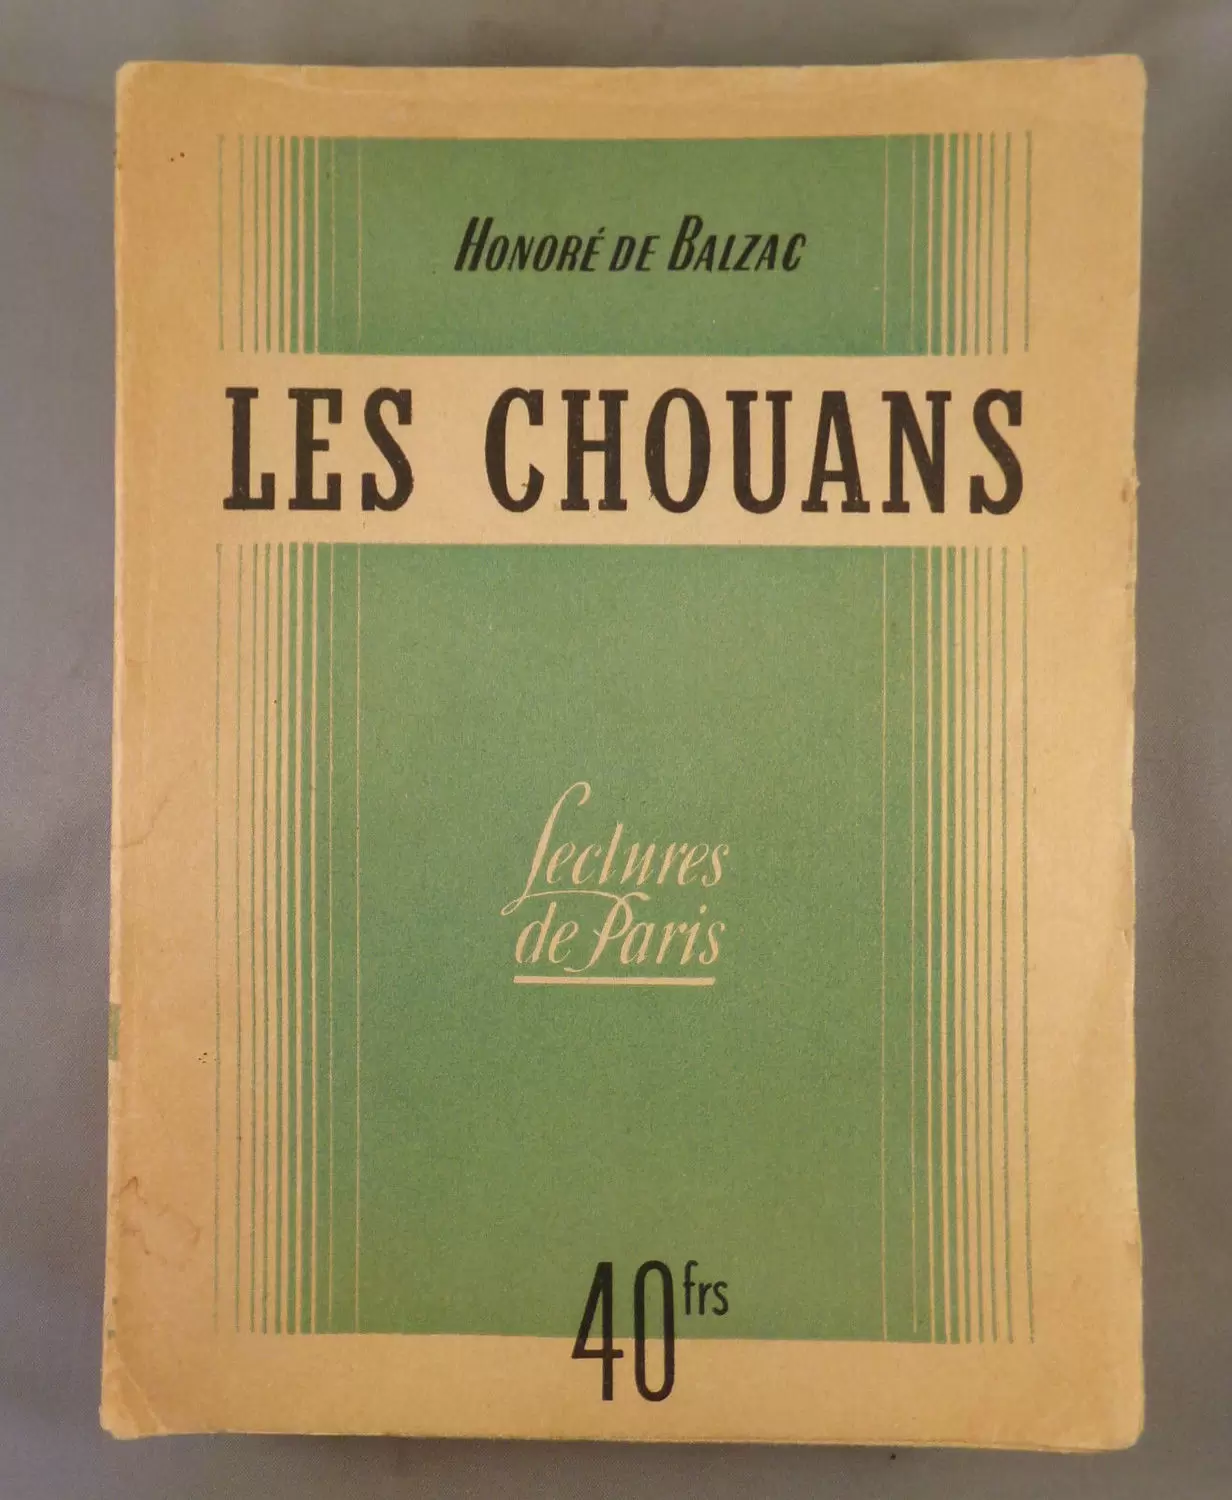 S.E.P.E. Lectures de Paris - Les chouans